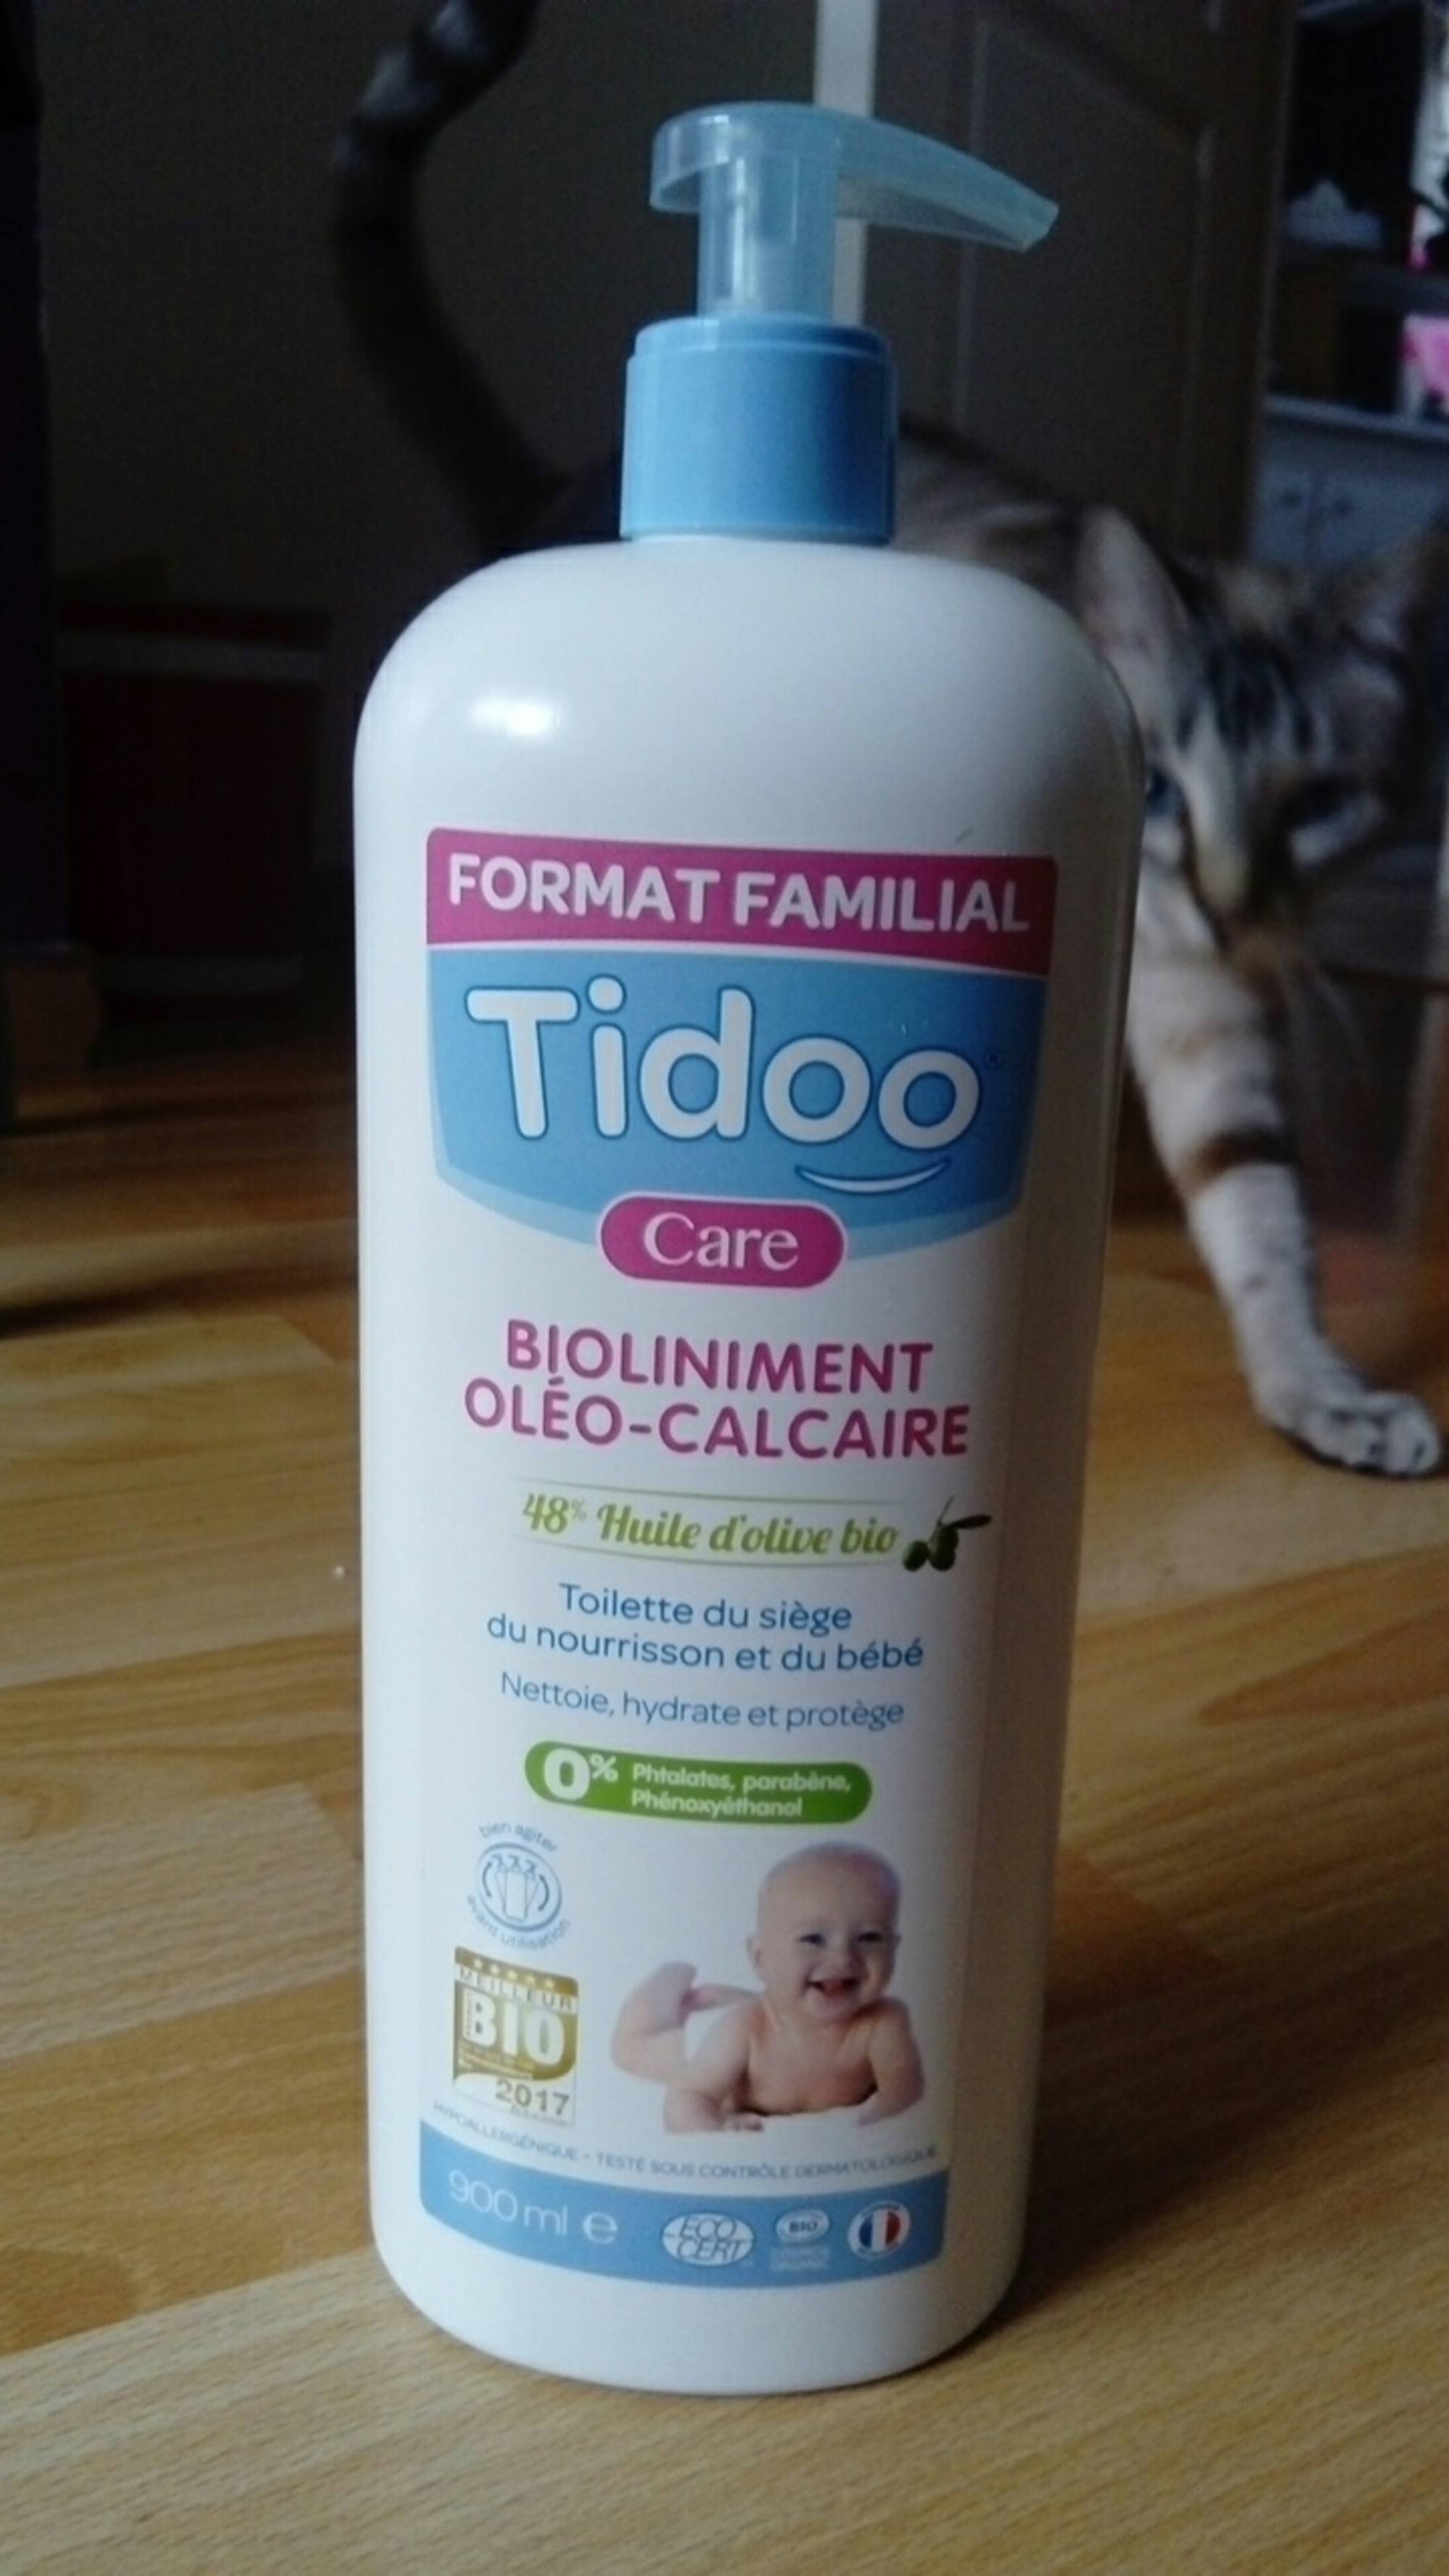 TIDOO - Care - Bioliniment oléo-calcaire